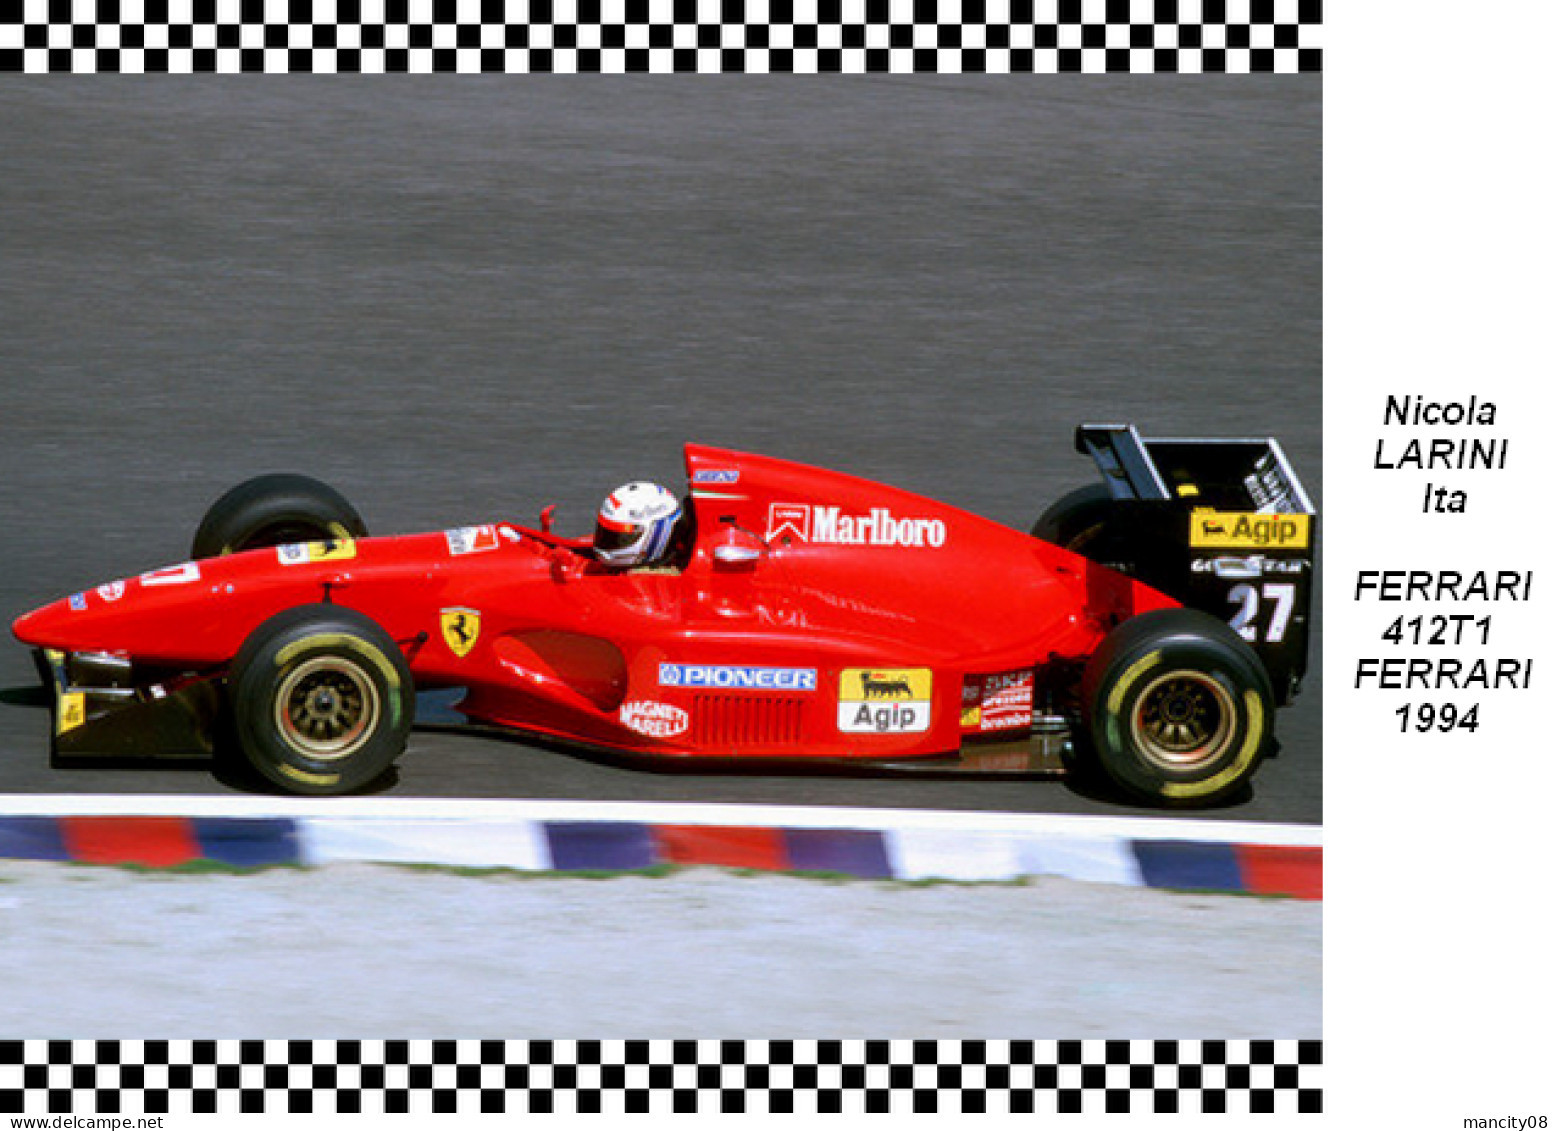 Nicola  Larini  Ferrari   412T1   1994 - Grand Prix / F1